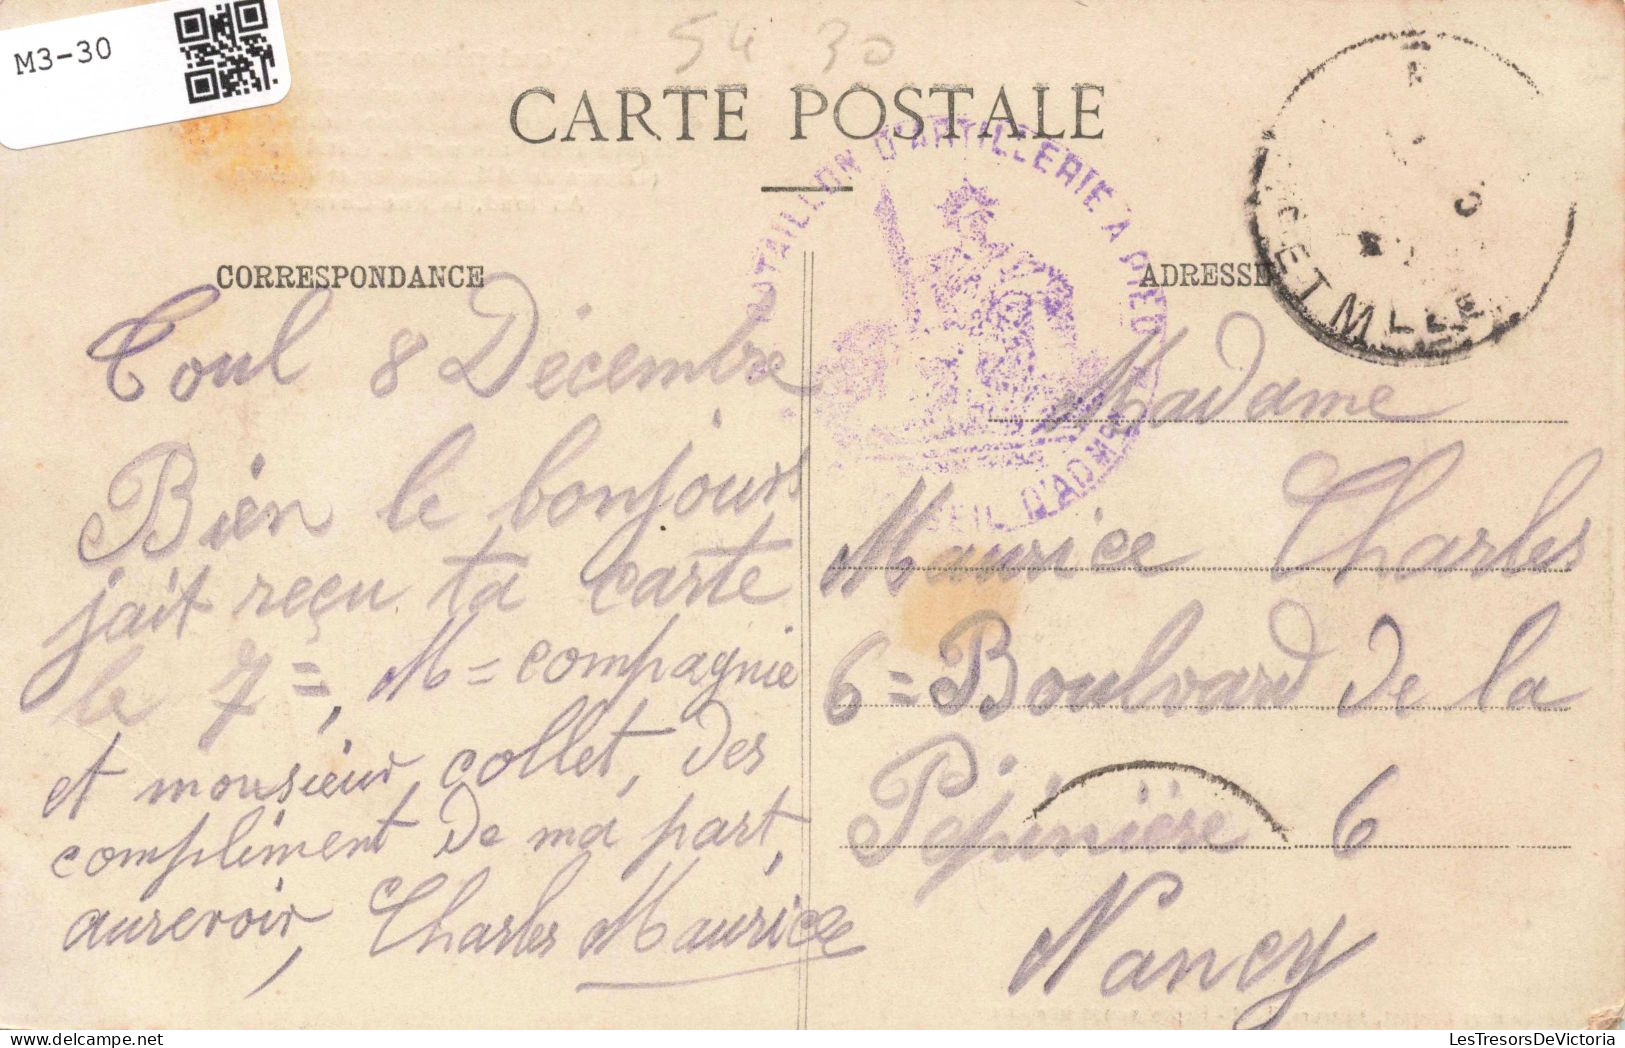 FRANCE - Toul Pittoresque - La Fontaine Monumentale - Animé - Carte Postale Ancienne - Toul